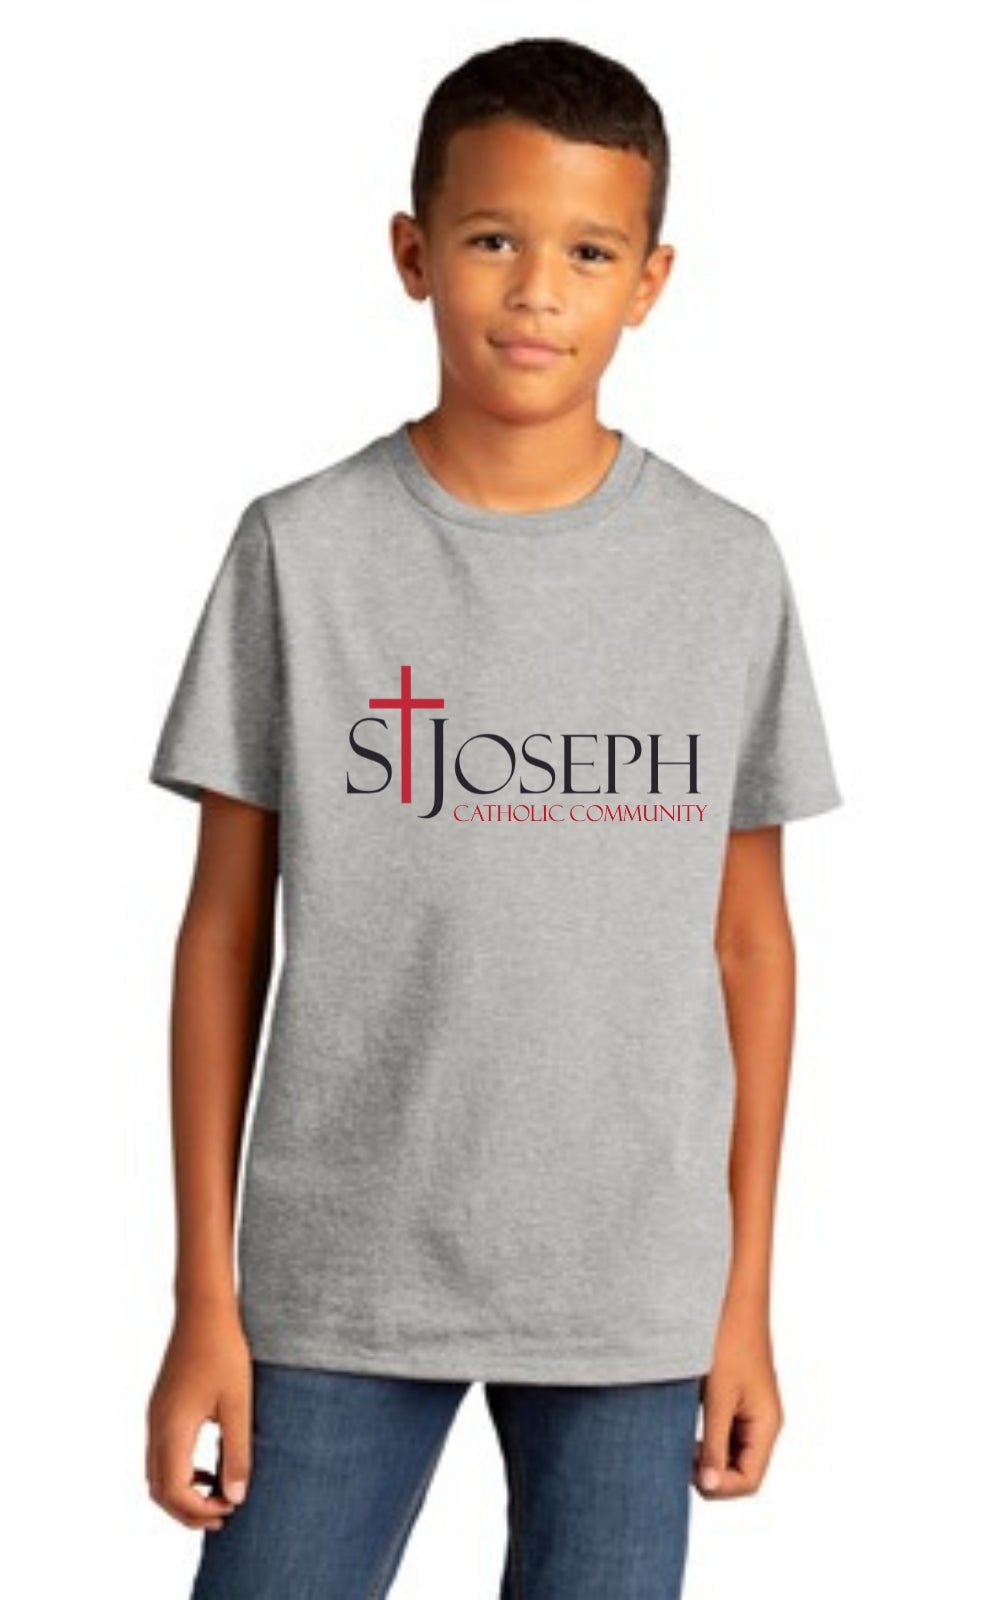 Youth Re-Tee® Short Sleeve Tee with St Josephs Catholic Community Logo DT8000Y